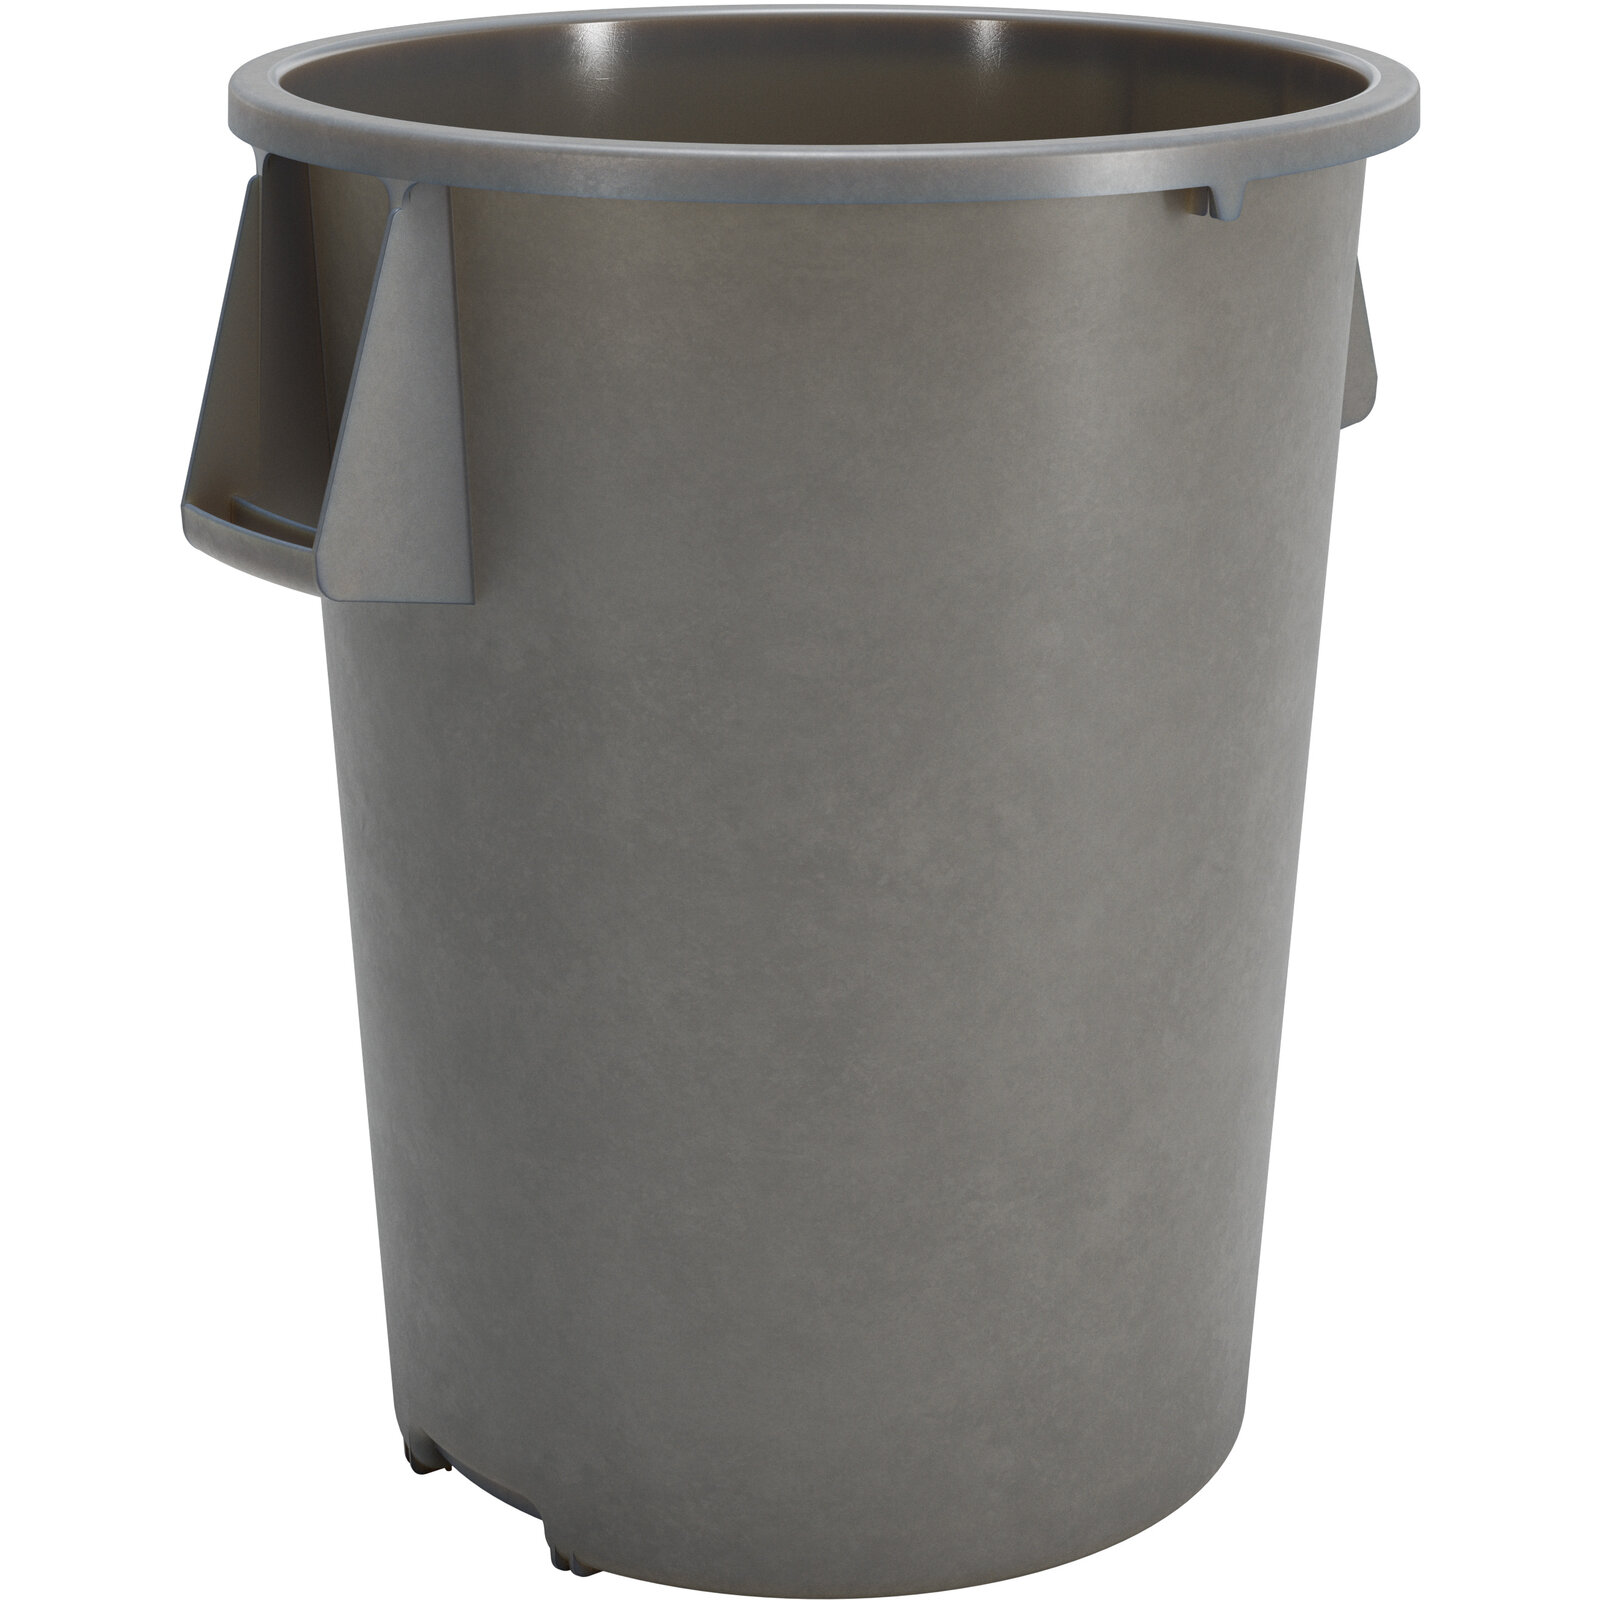 Bronco Round Waste Bin Trash  Container, 55 gallon, Gray - 